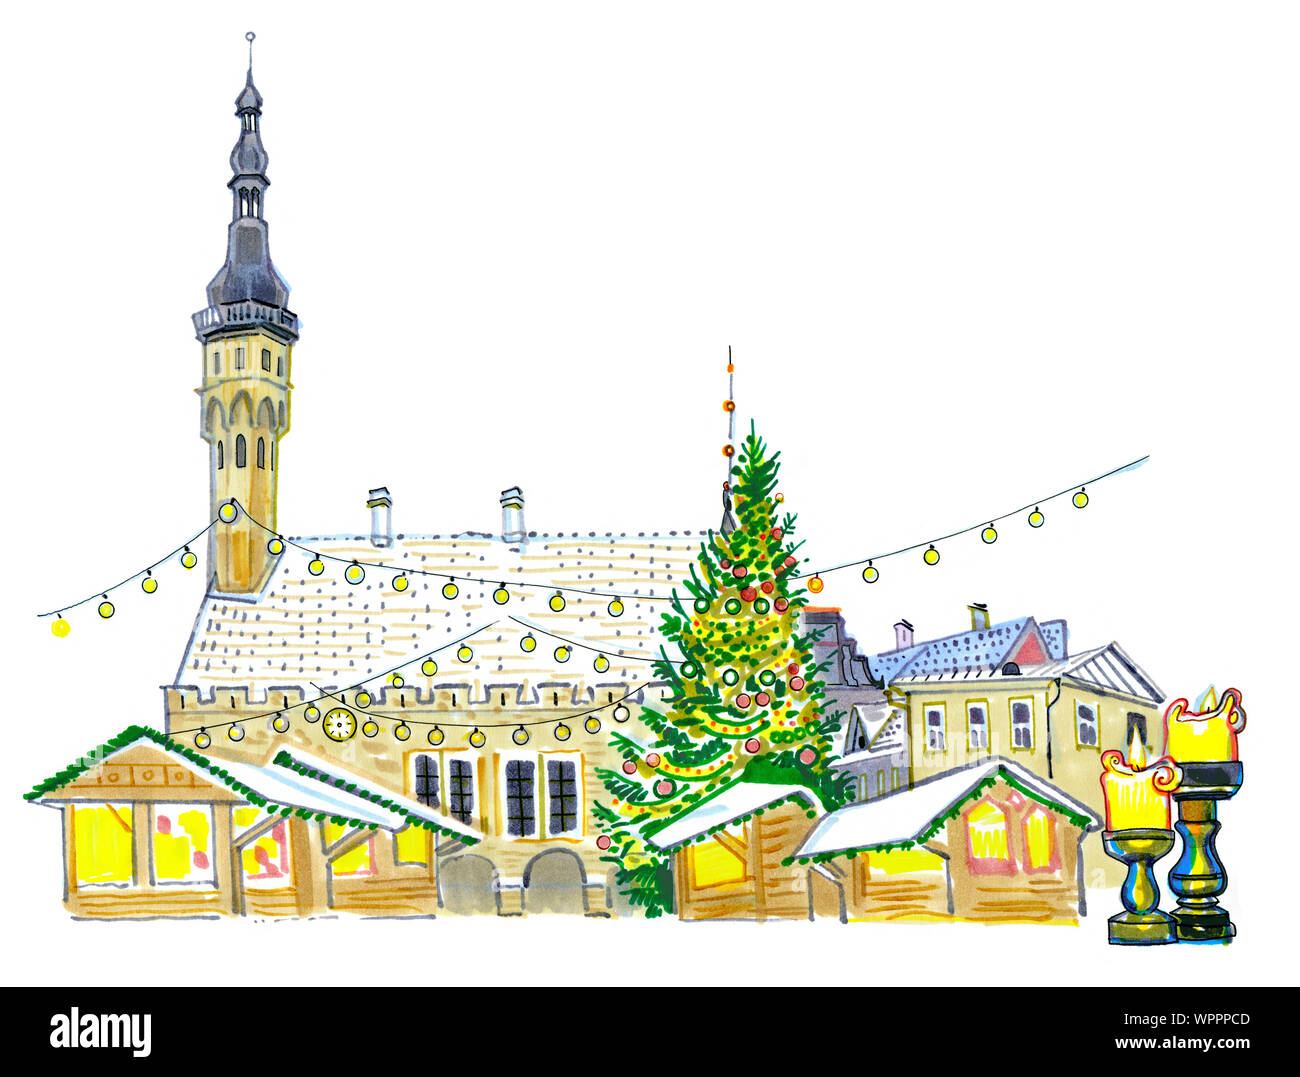 Weihnachtsmarkt auf dem Rathausplatz in Tallinn, Estland. Tannenbaum, Beleuchtung, Kerzen, Schnee auf den Dächern. Handgezeichneten sketchy Styl Stockfoto